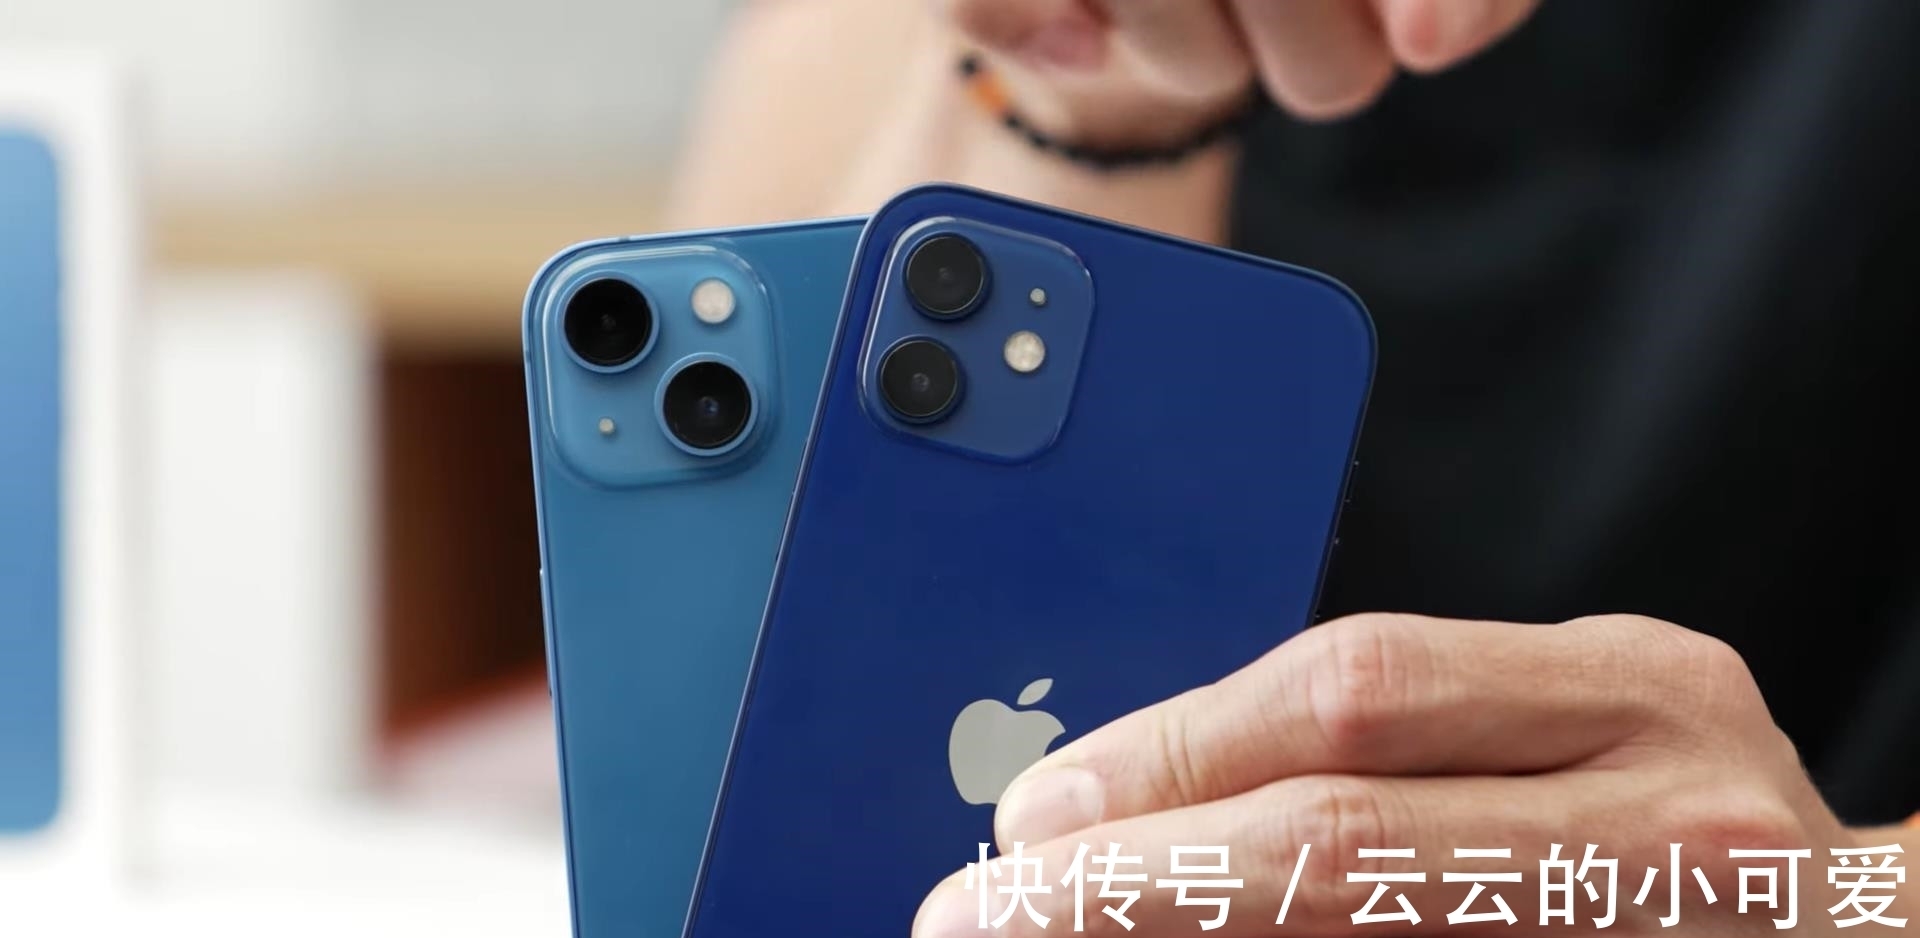 仿生处理器|iPhone13 VS iPhone12：刘海、相机、芯片、电池都有很大升级